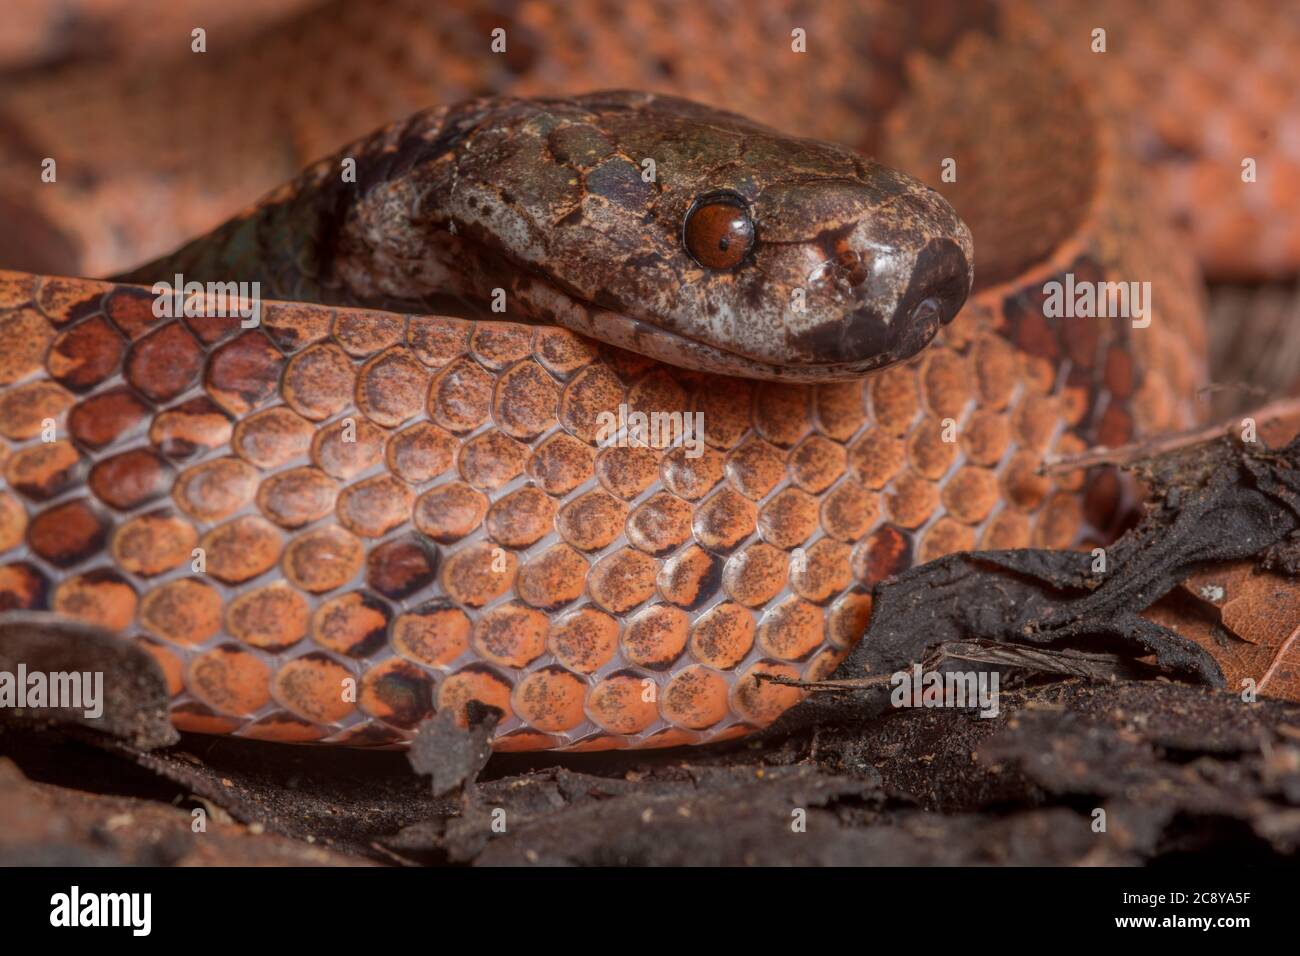 Le serpent à loutre à col foncé a récemment été divisé en deux espèces dont l'une était celle-ci : l'Asthenodipsas borneensis, le serpent à loutre Bornean. Banque D'Images